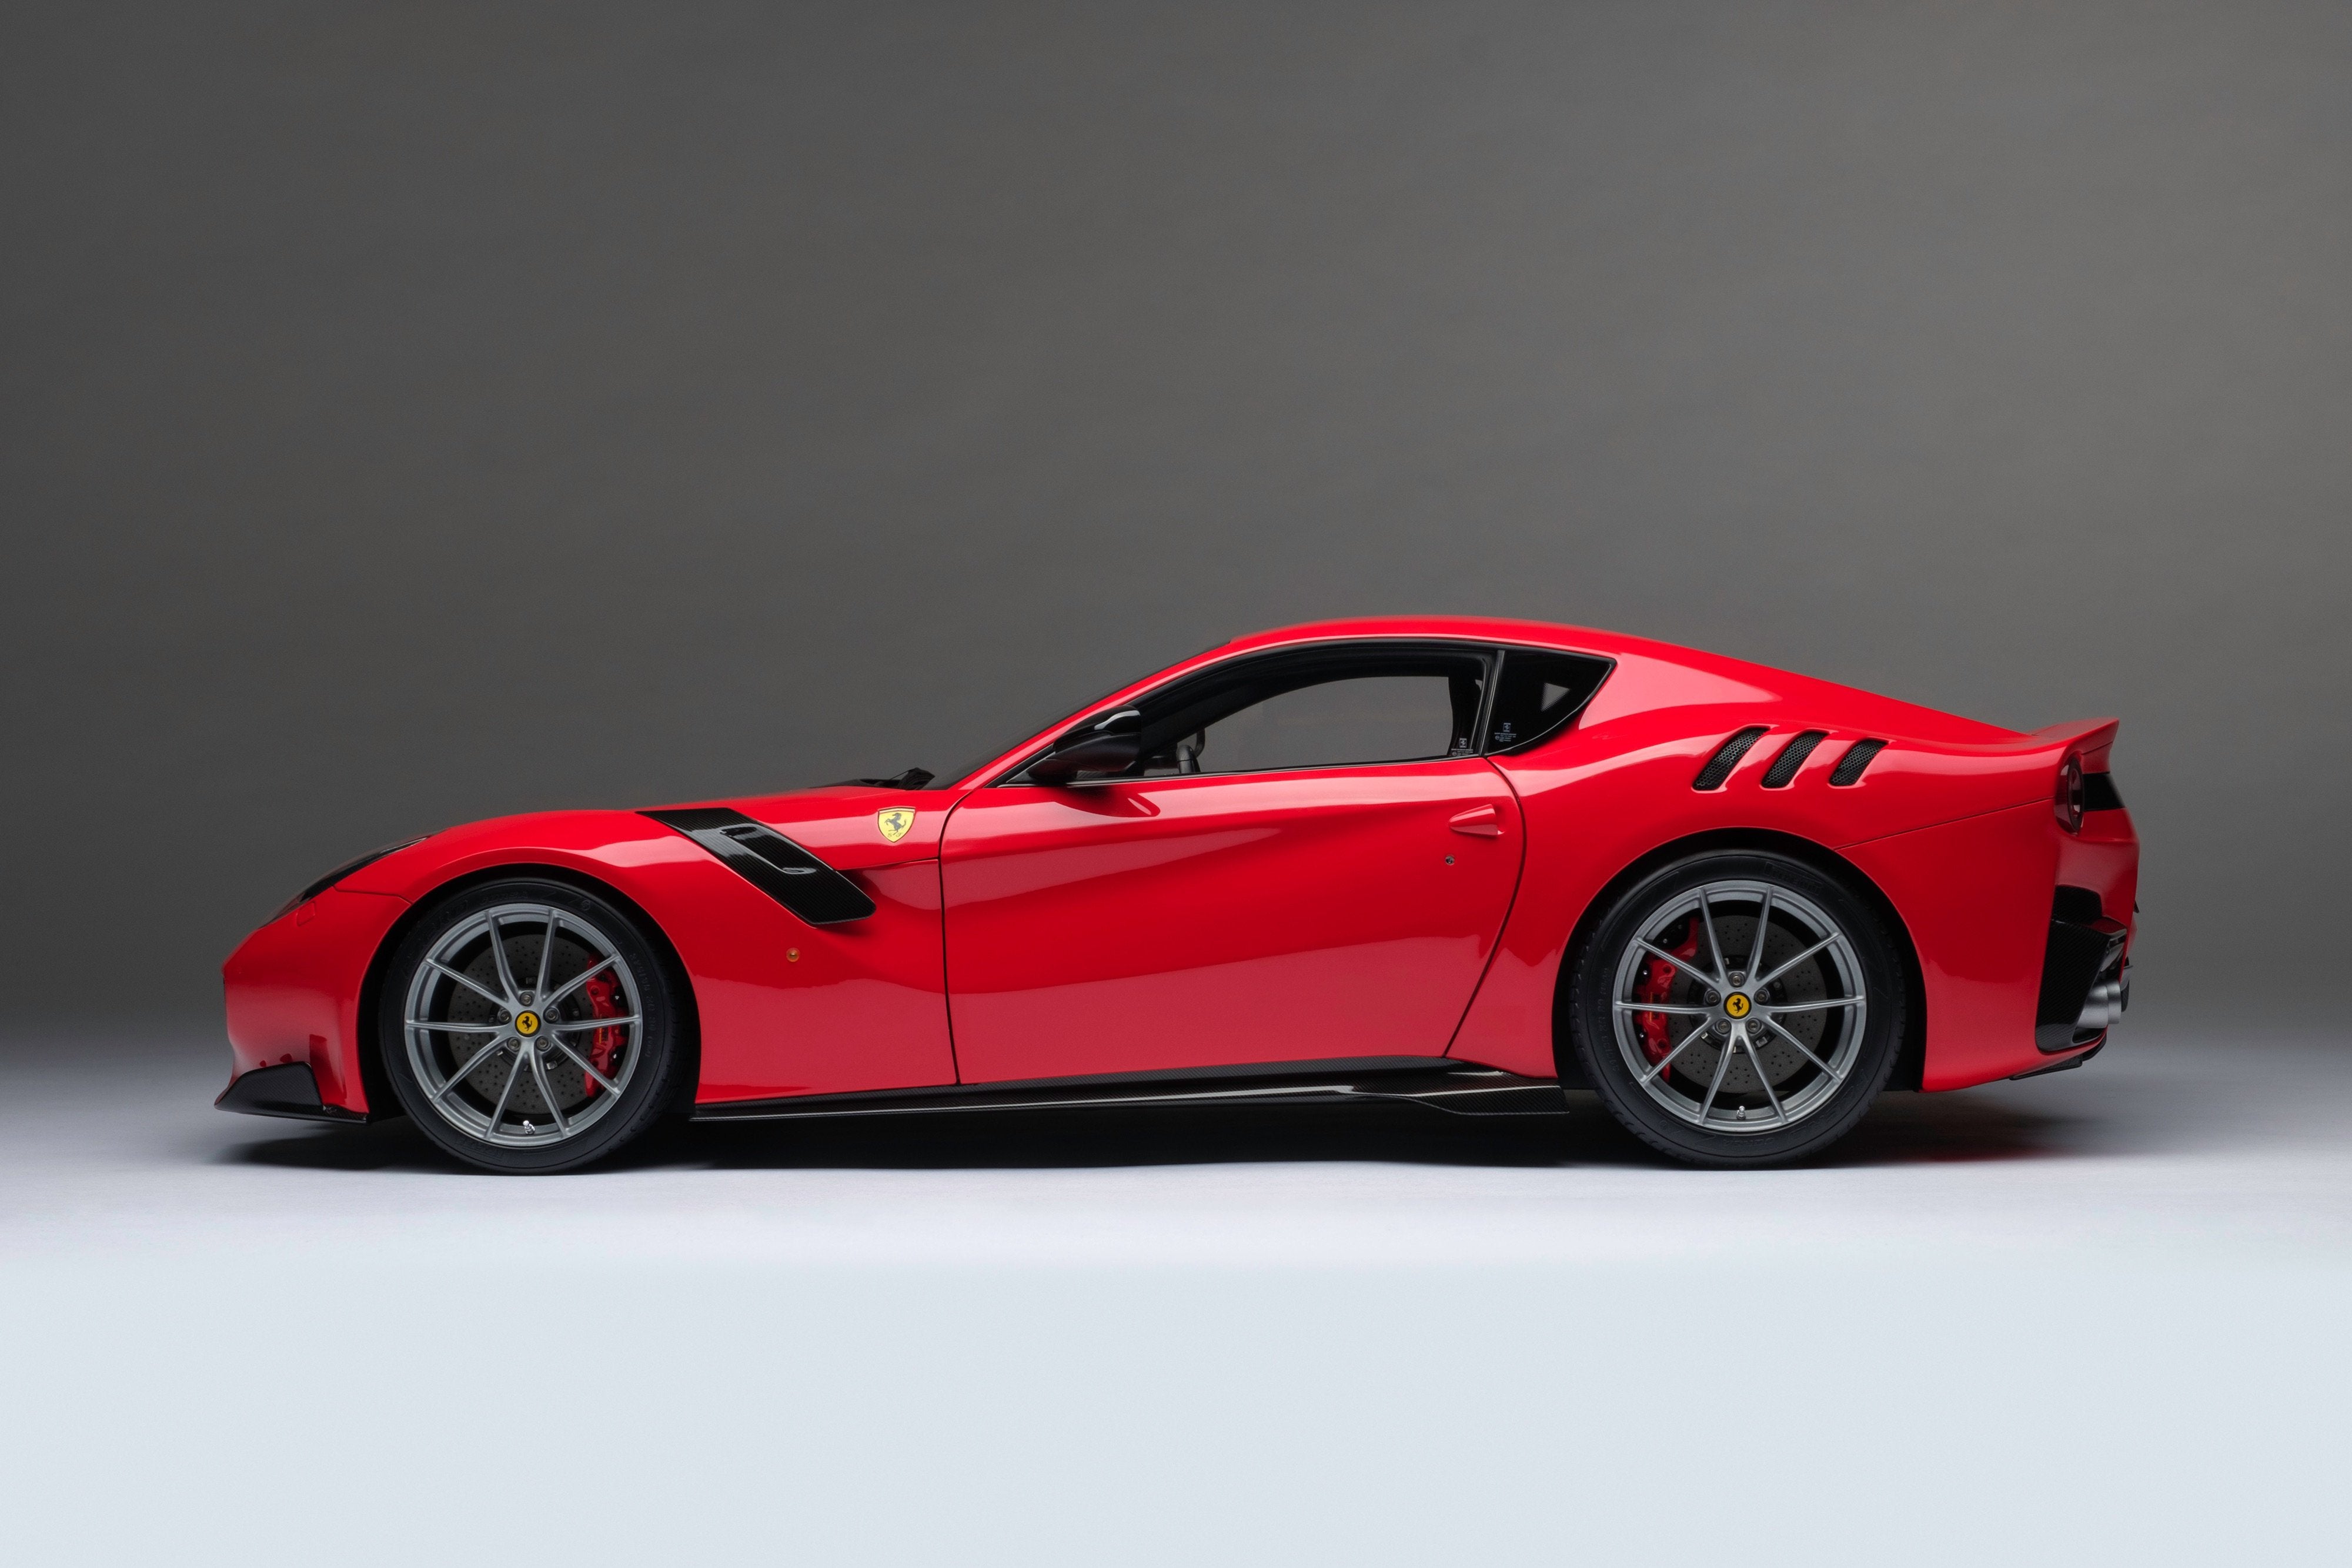 bryst grund Ryg, ryg, ryg del Ferrari F12 TDF (2015) – Amalgam Collection